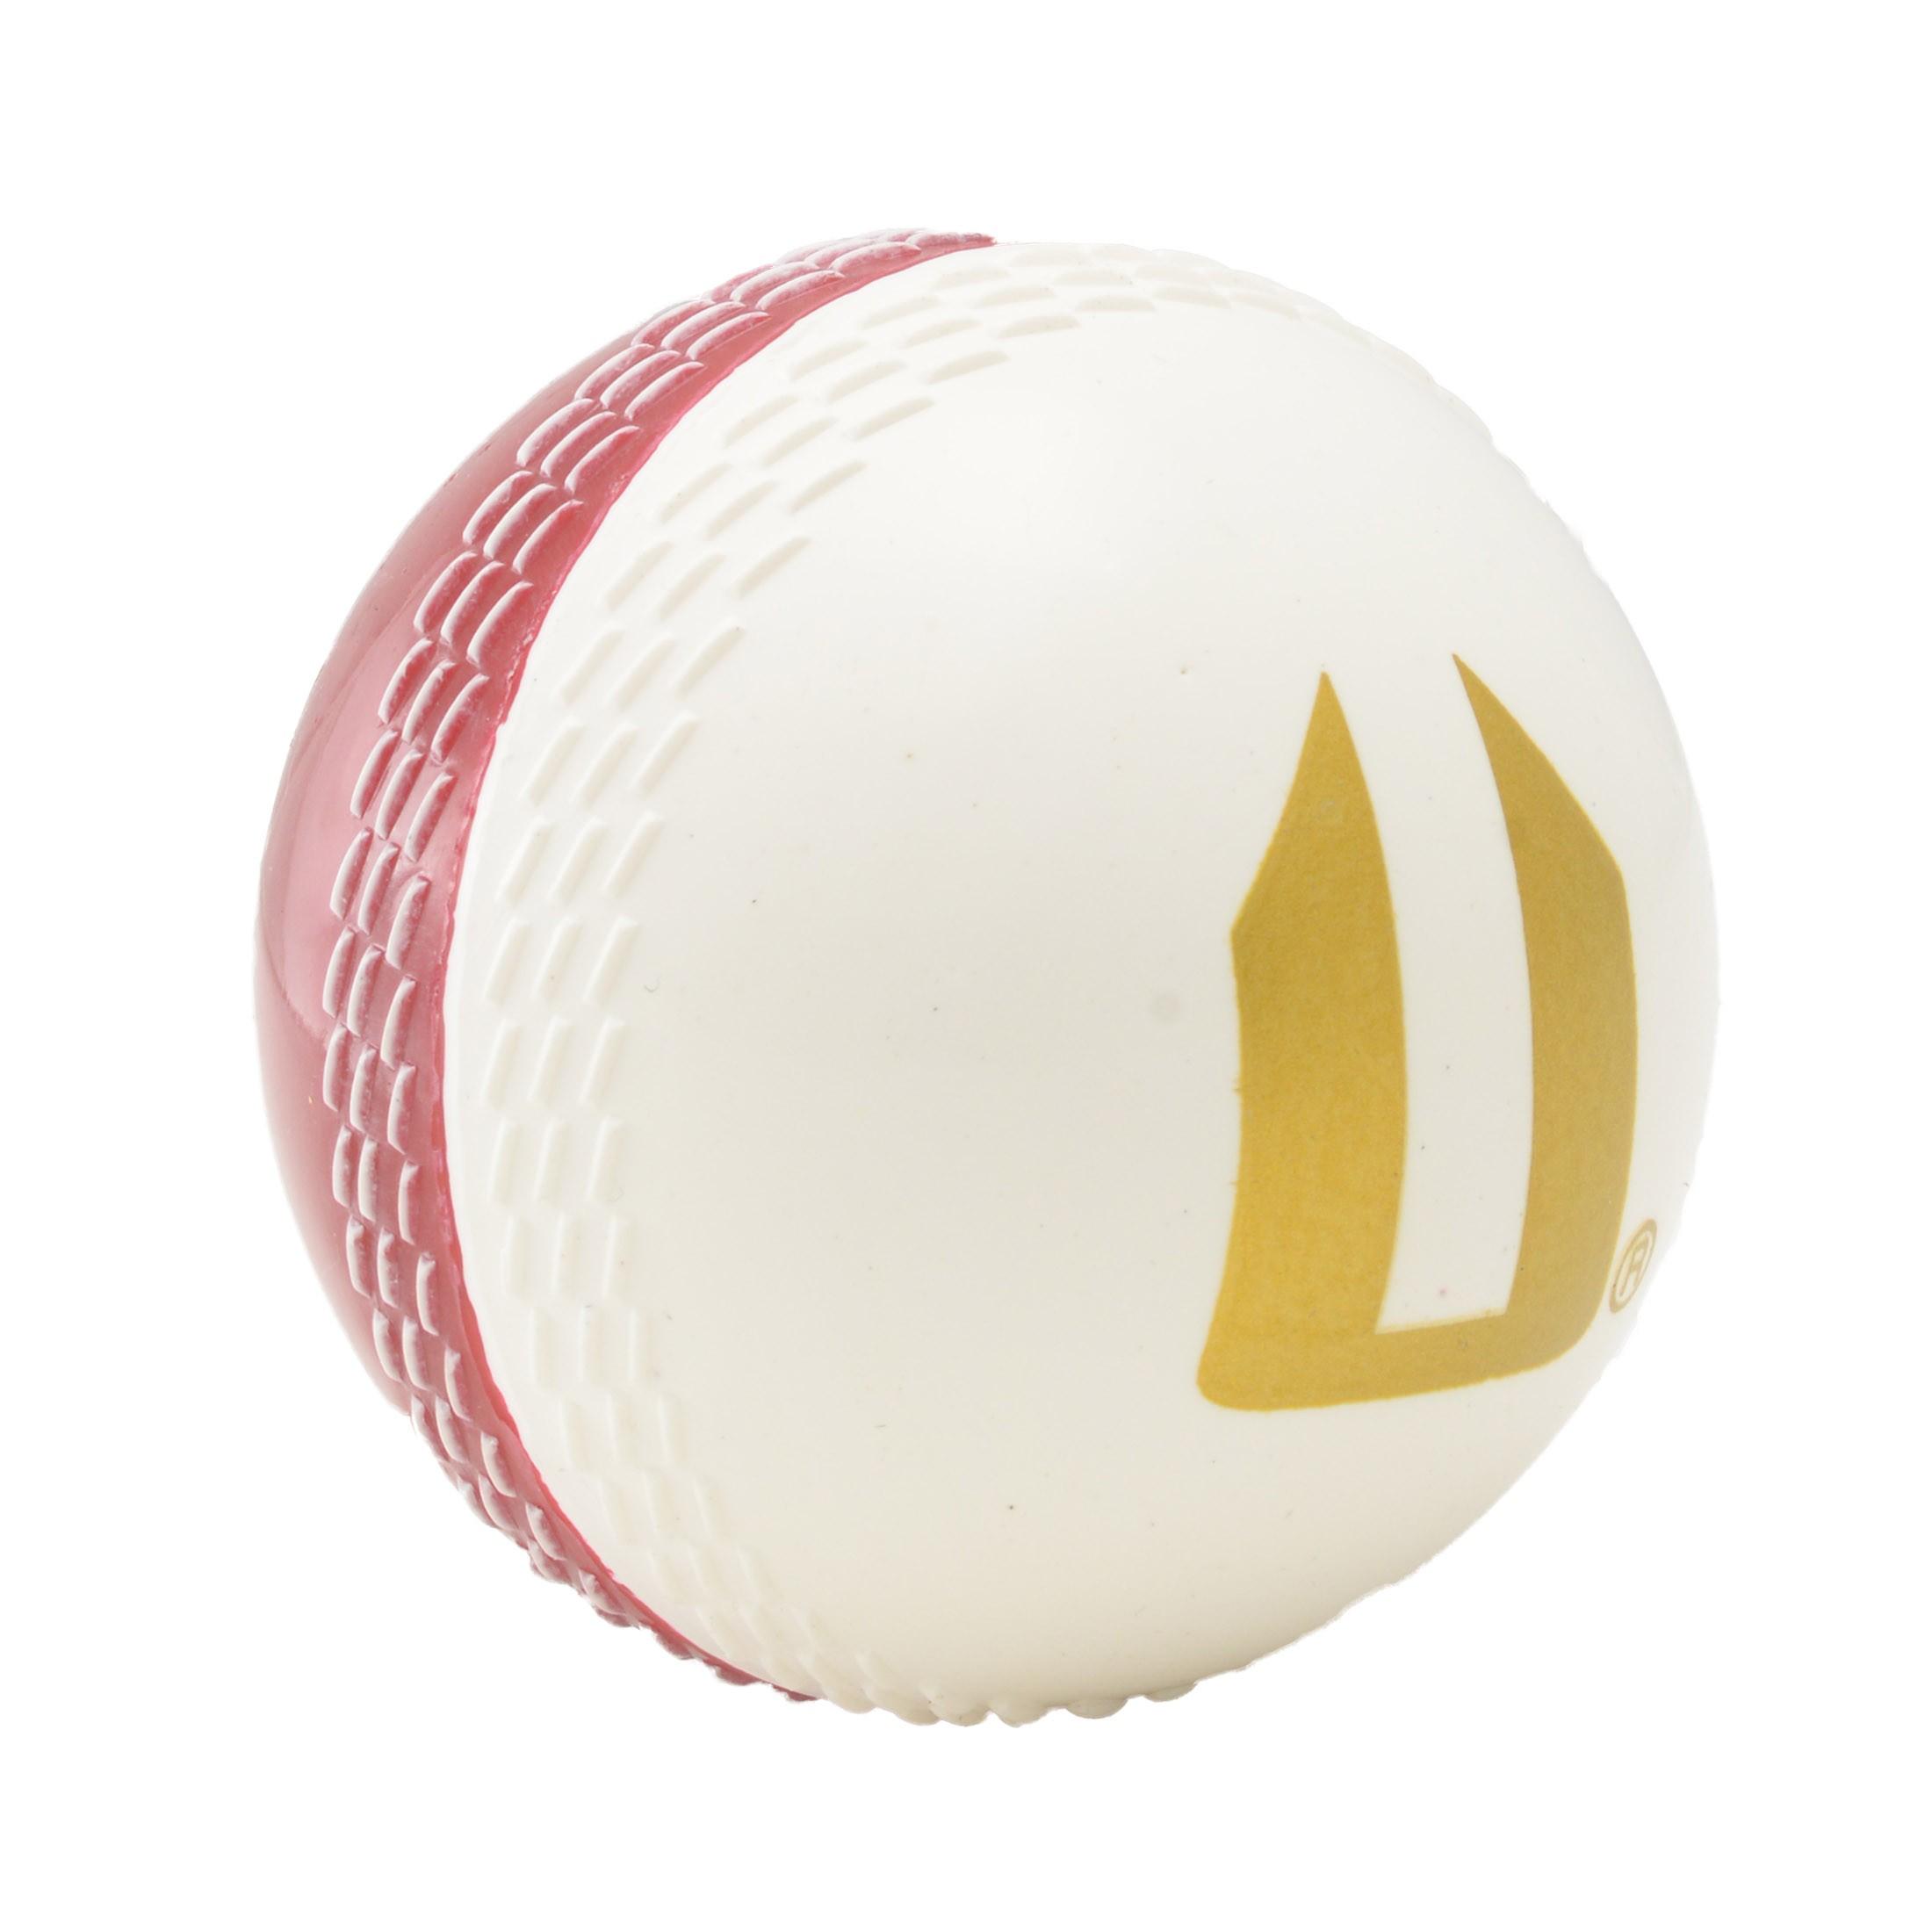 Red Sphere White X Logo - BULK BUY: Opttiuuq Magikk Ball PVC Cricket Training Ball